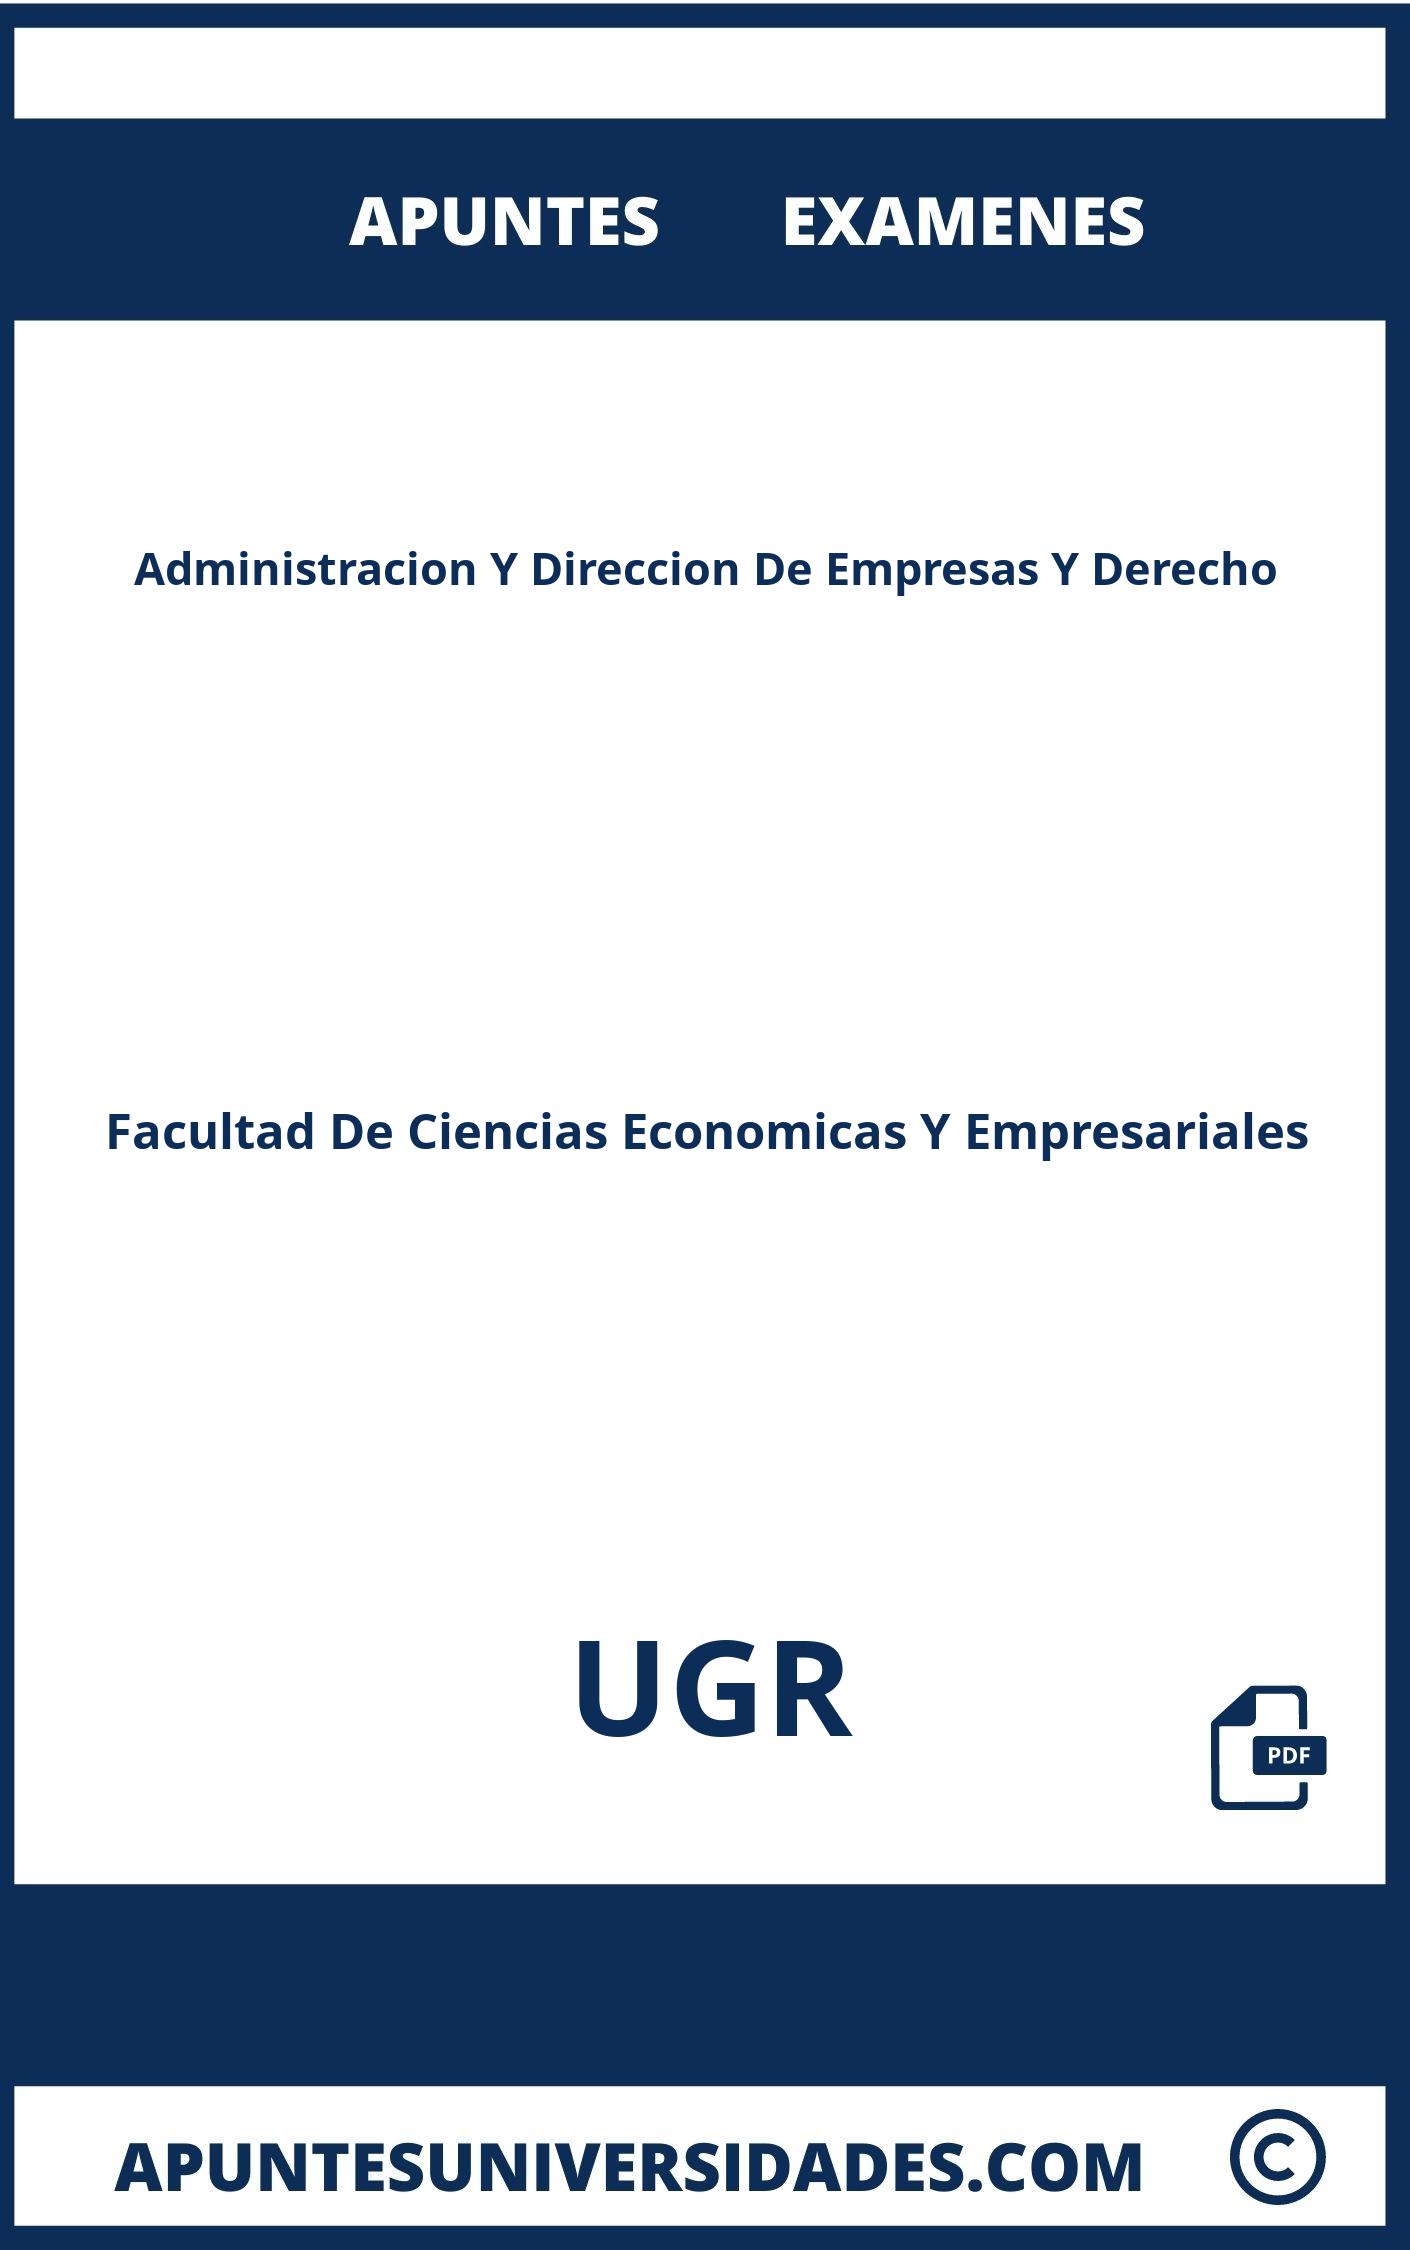 Apuntes y Examenes Administracion Y Direccion De Empresas Y Derecho UGR